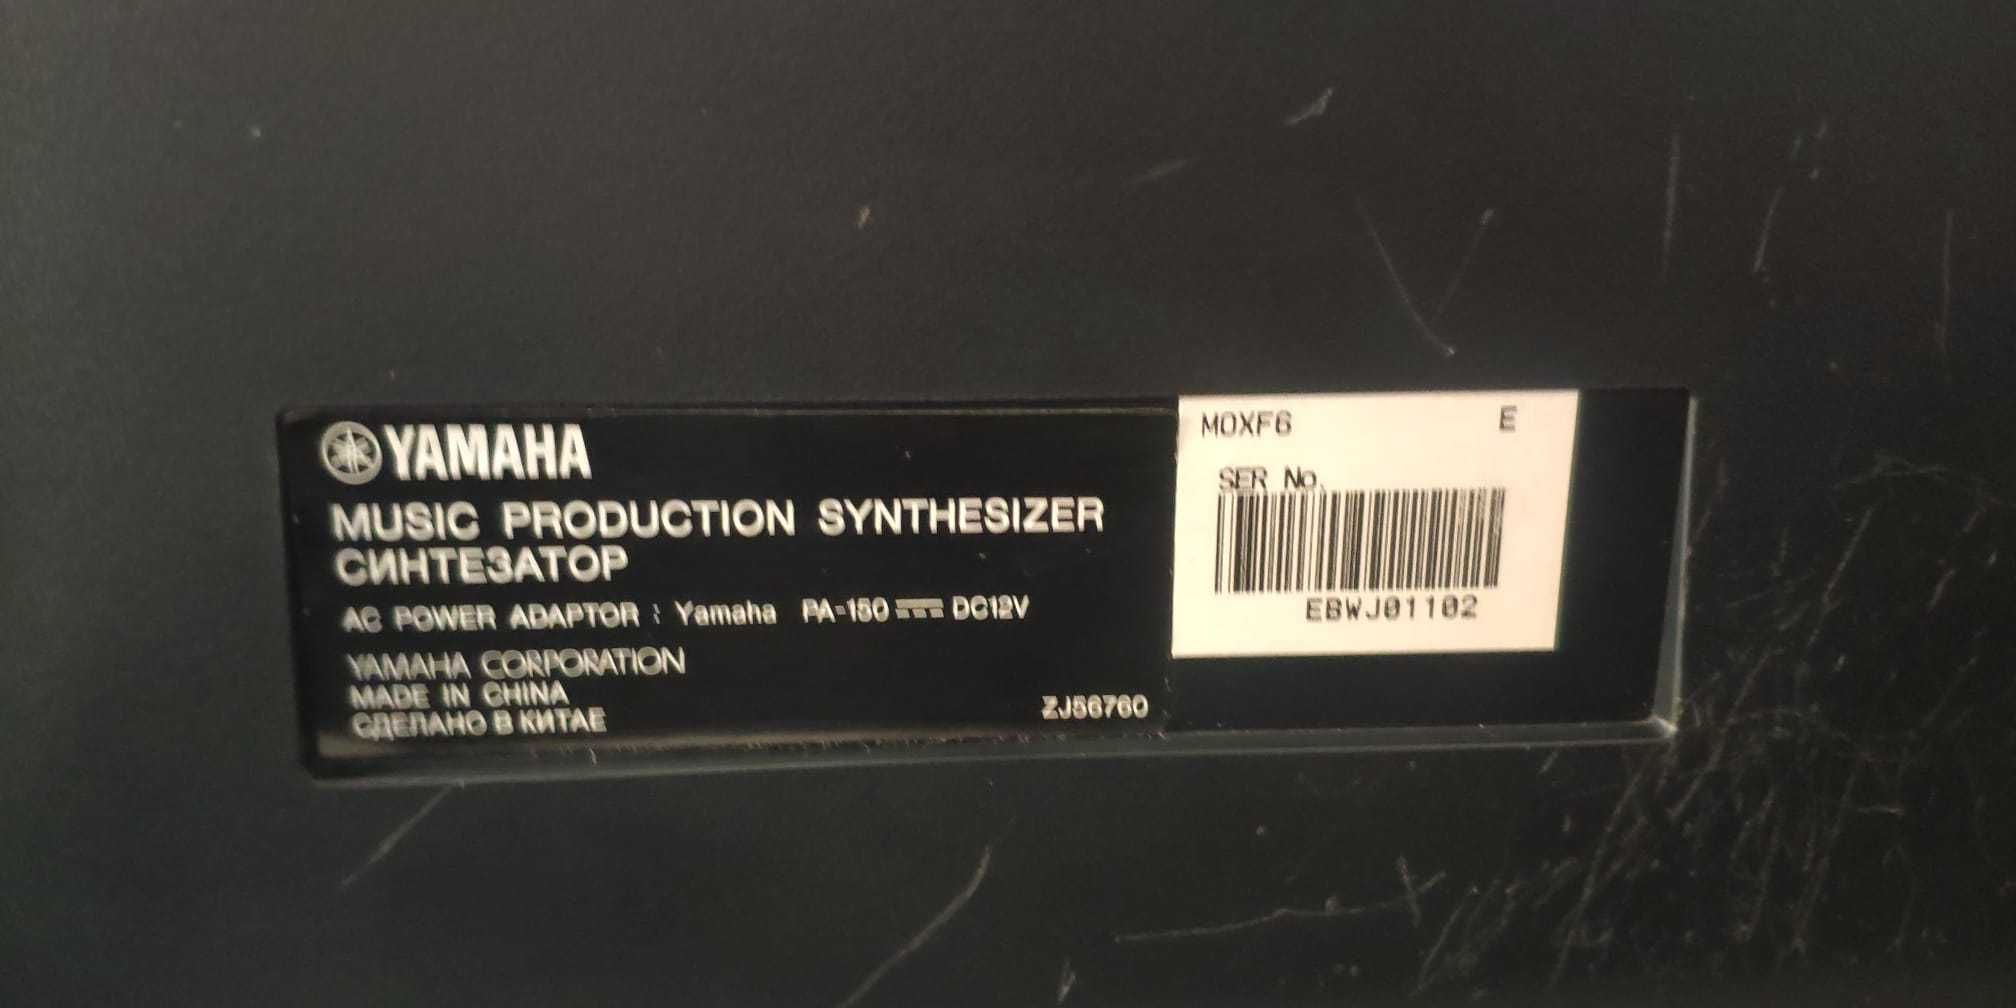 2800 lei- Yamaha MOXF6 Workstation Sintetizator